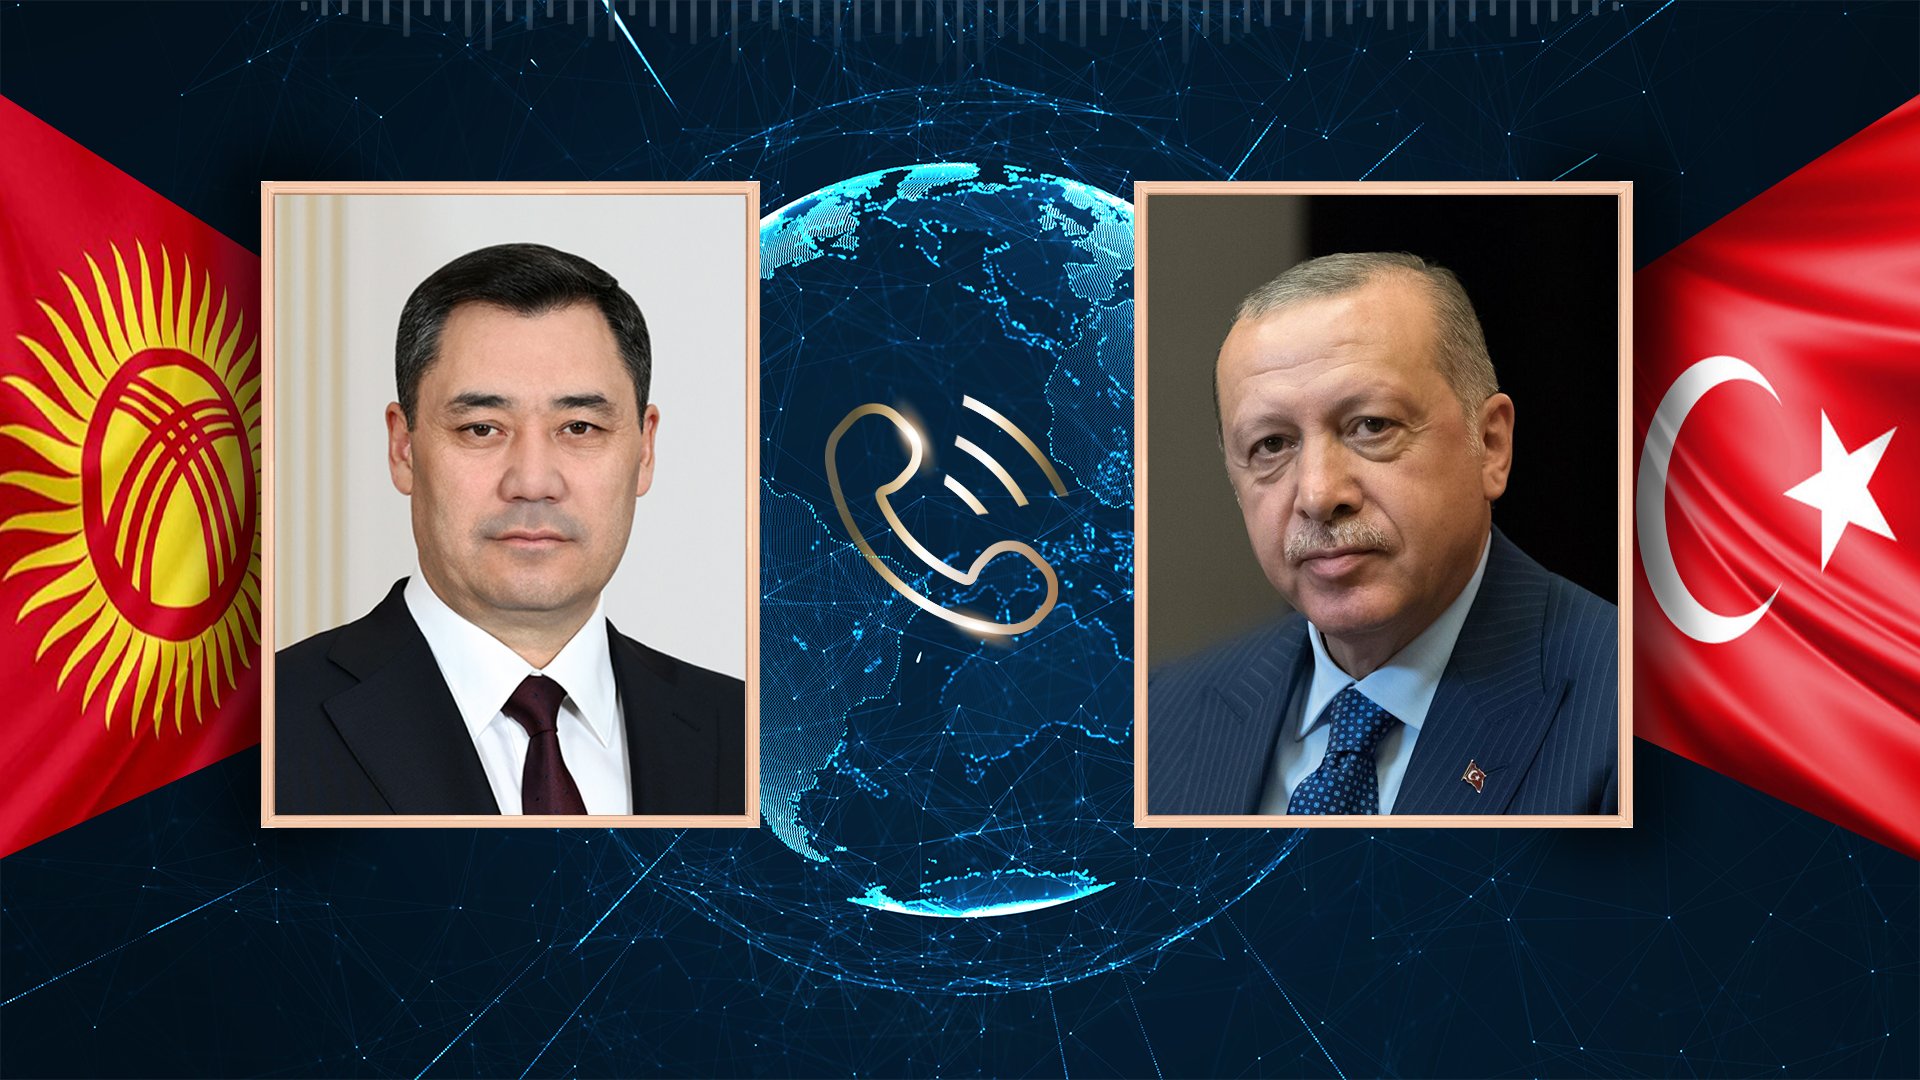 Президенты Кыргызстана и Турции провели телефонный разговор